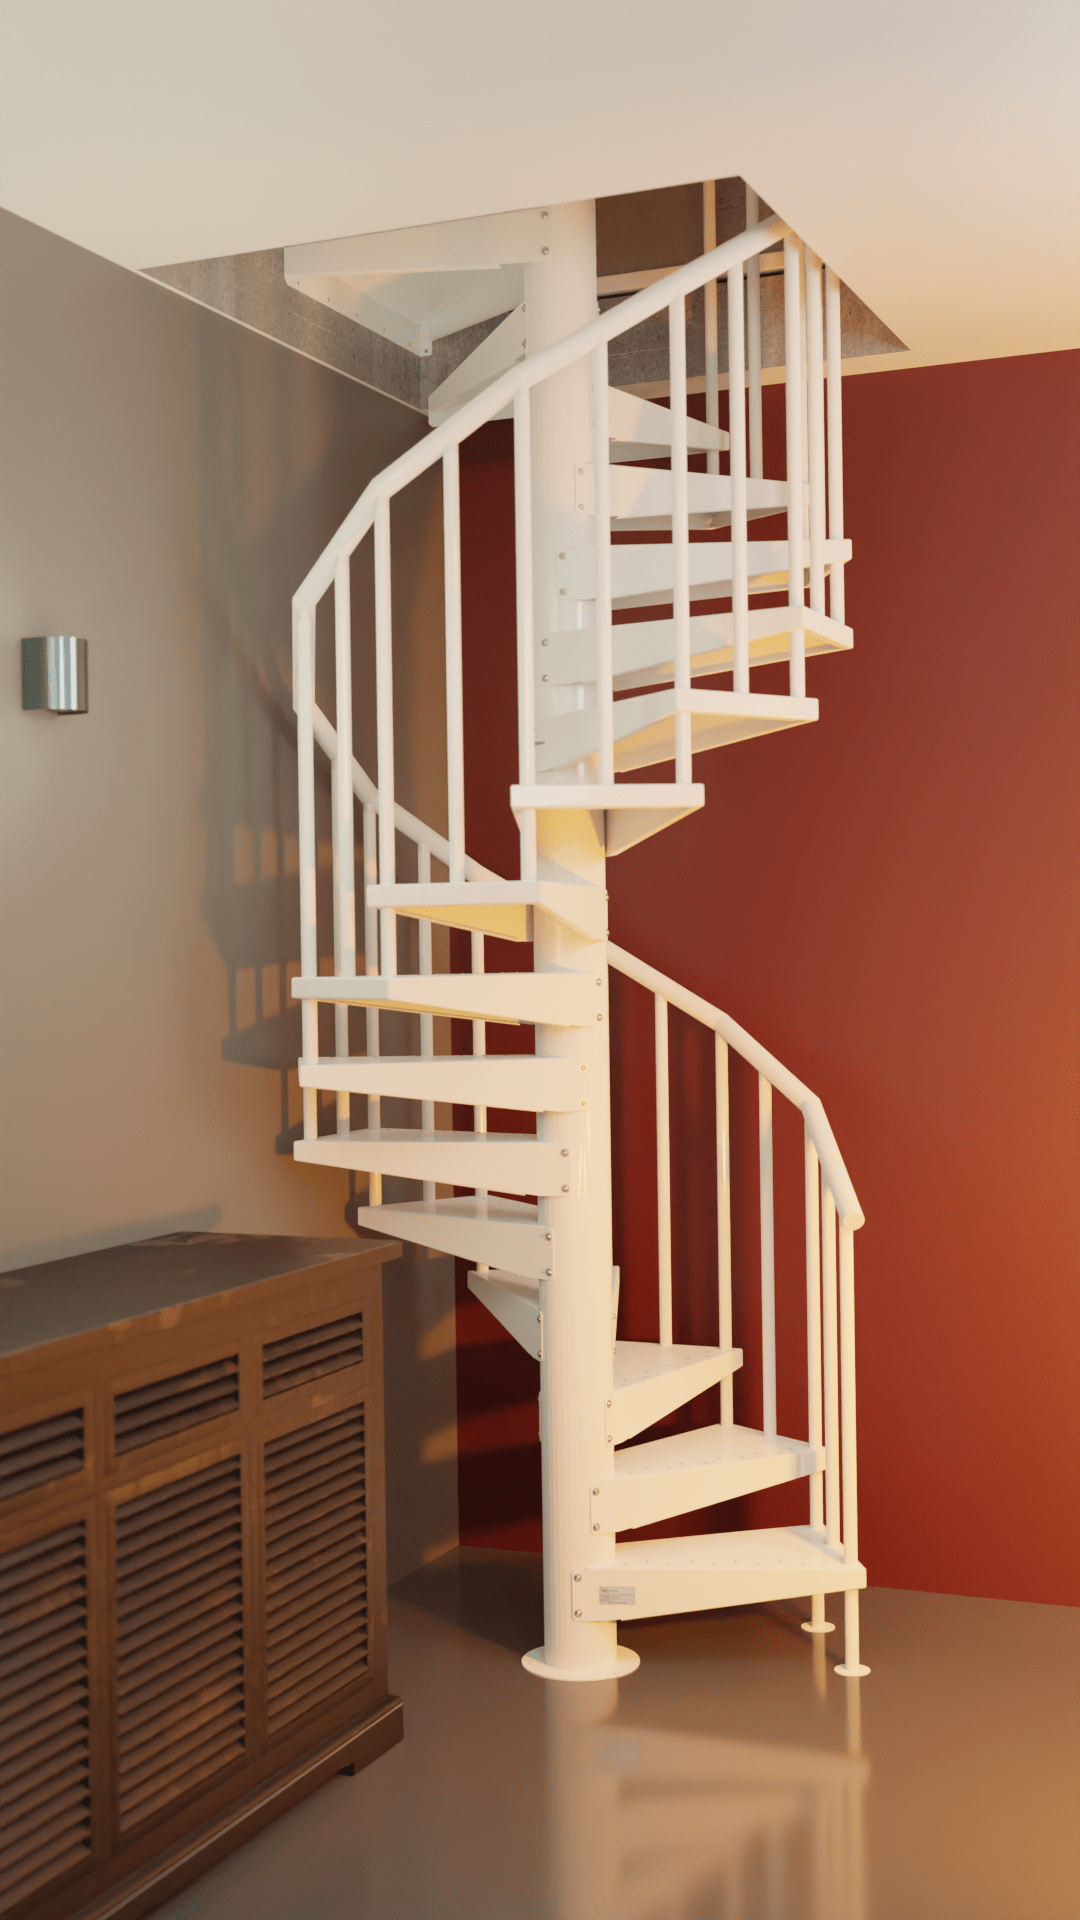 Escalera de caracol en garaje para acceso a casa metálica en color blanco